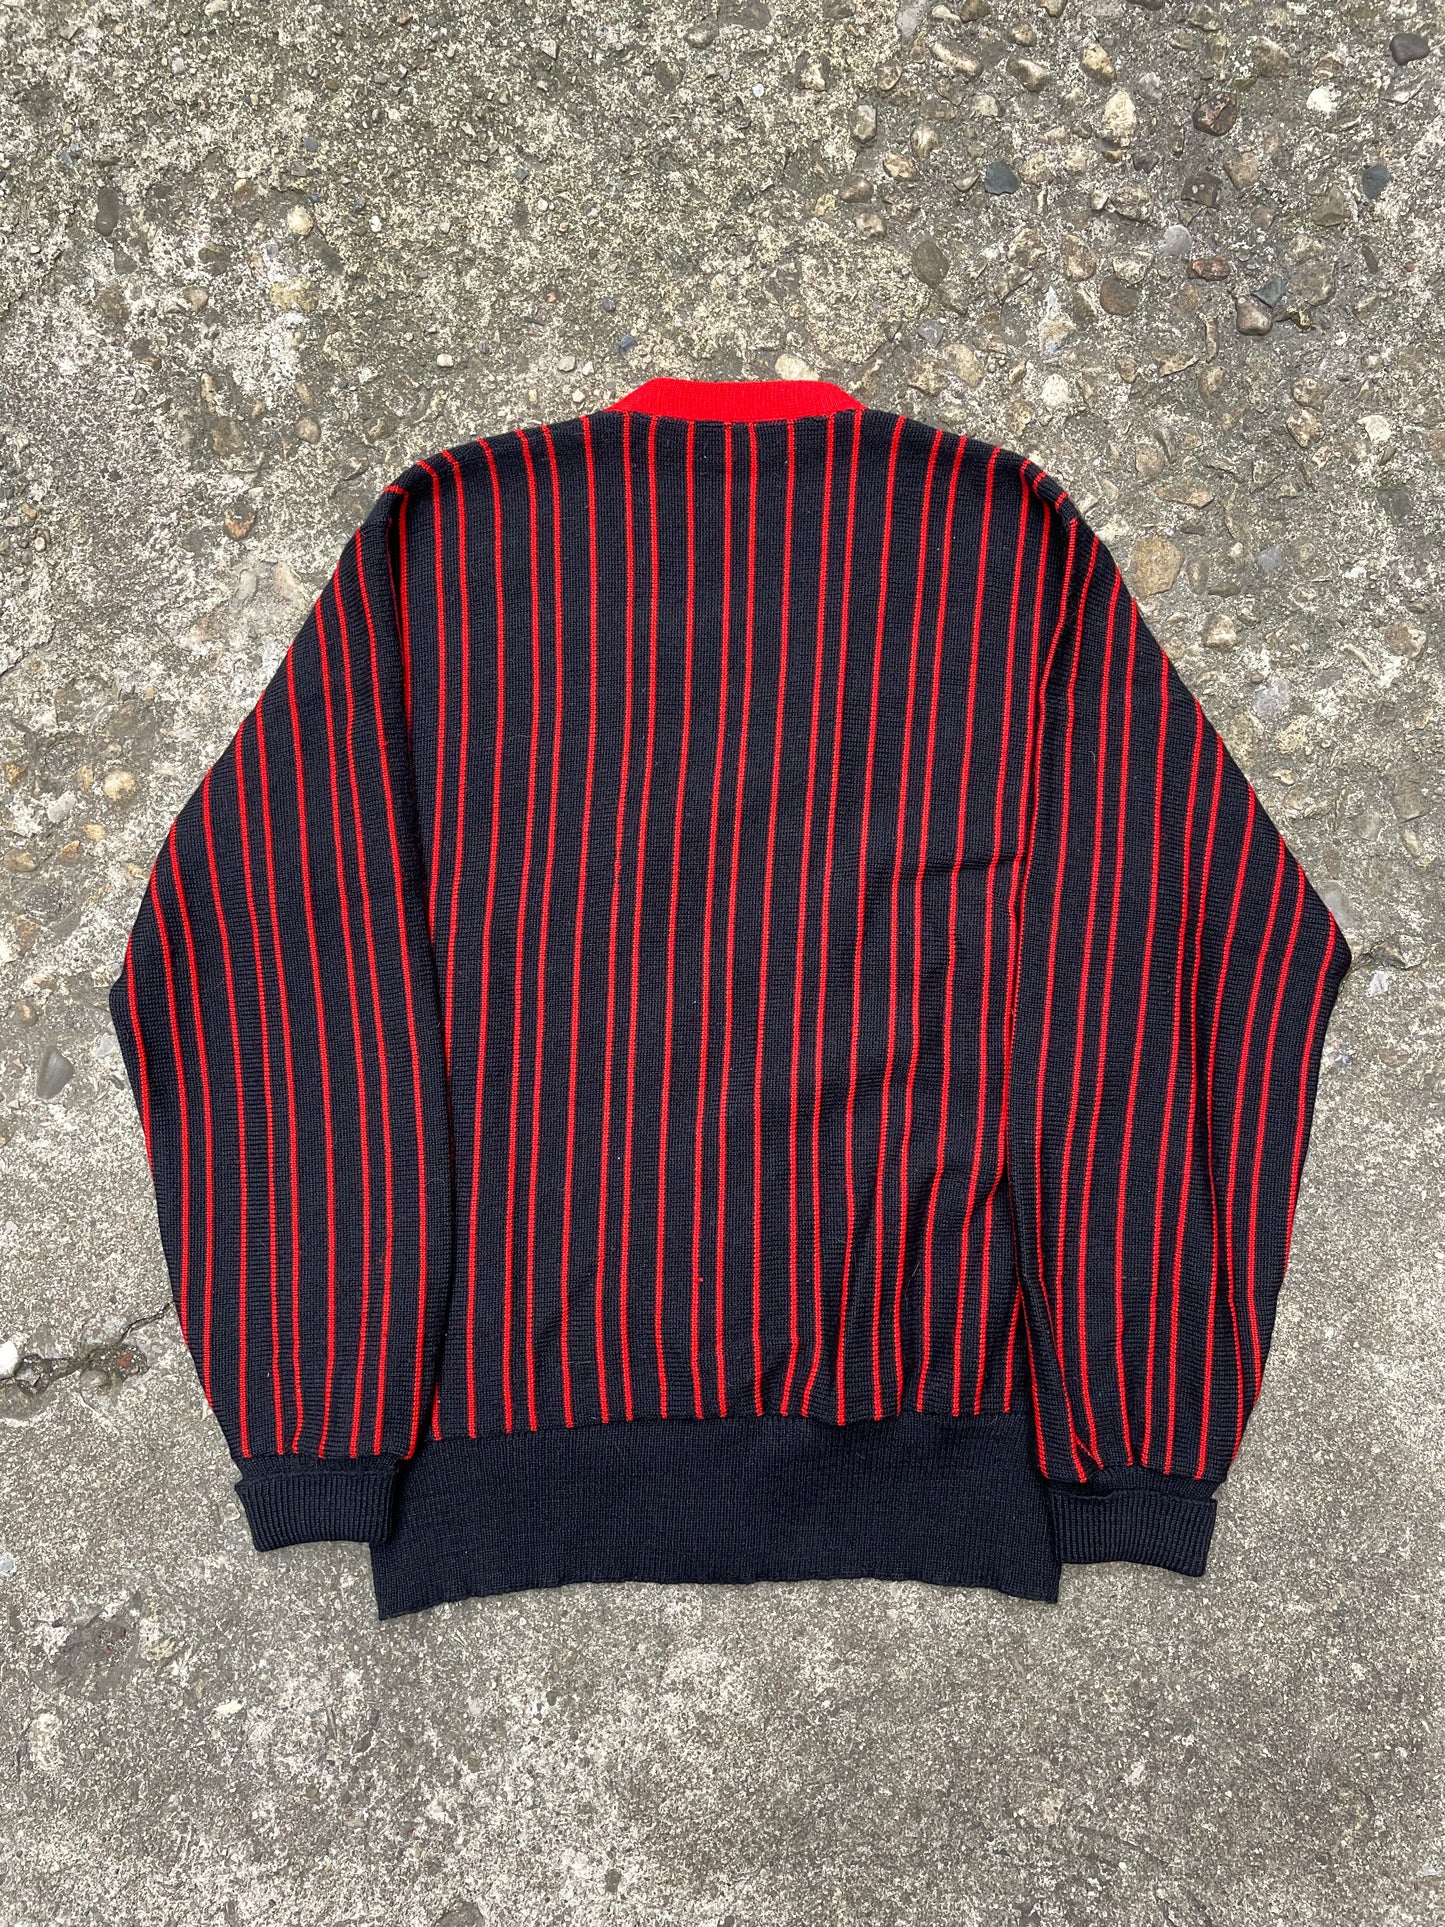 1960's Red & Black Striped Knit Cardigan - L